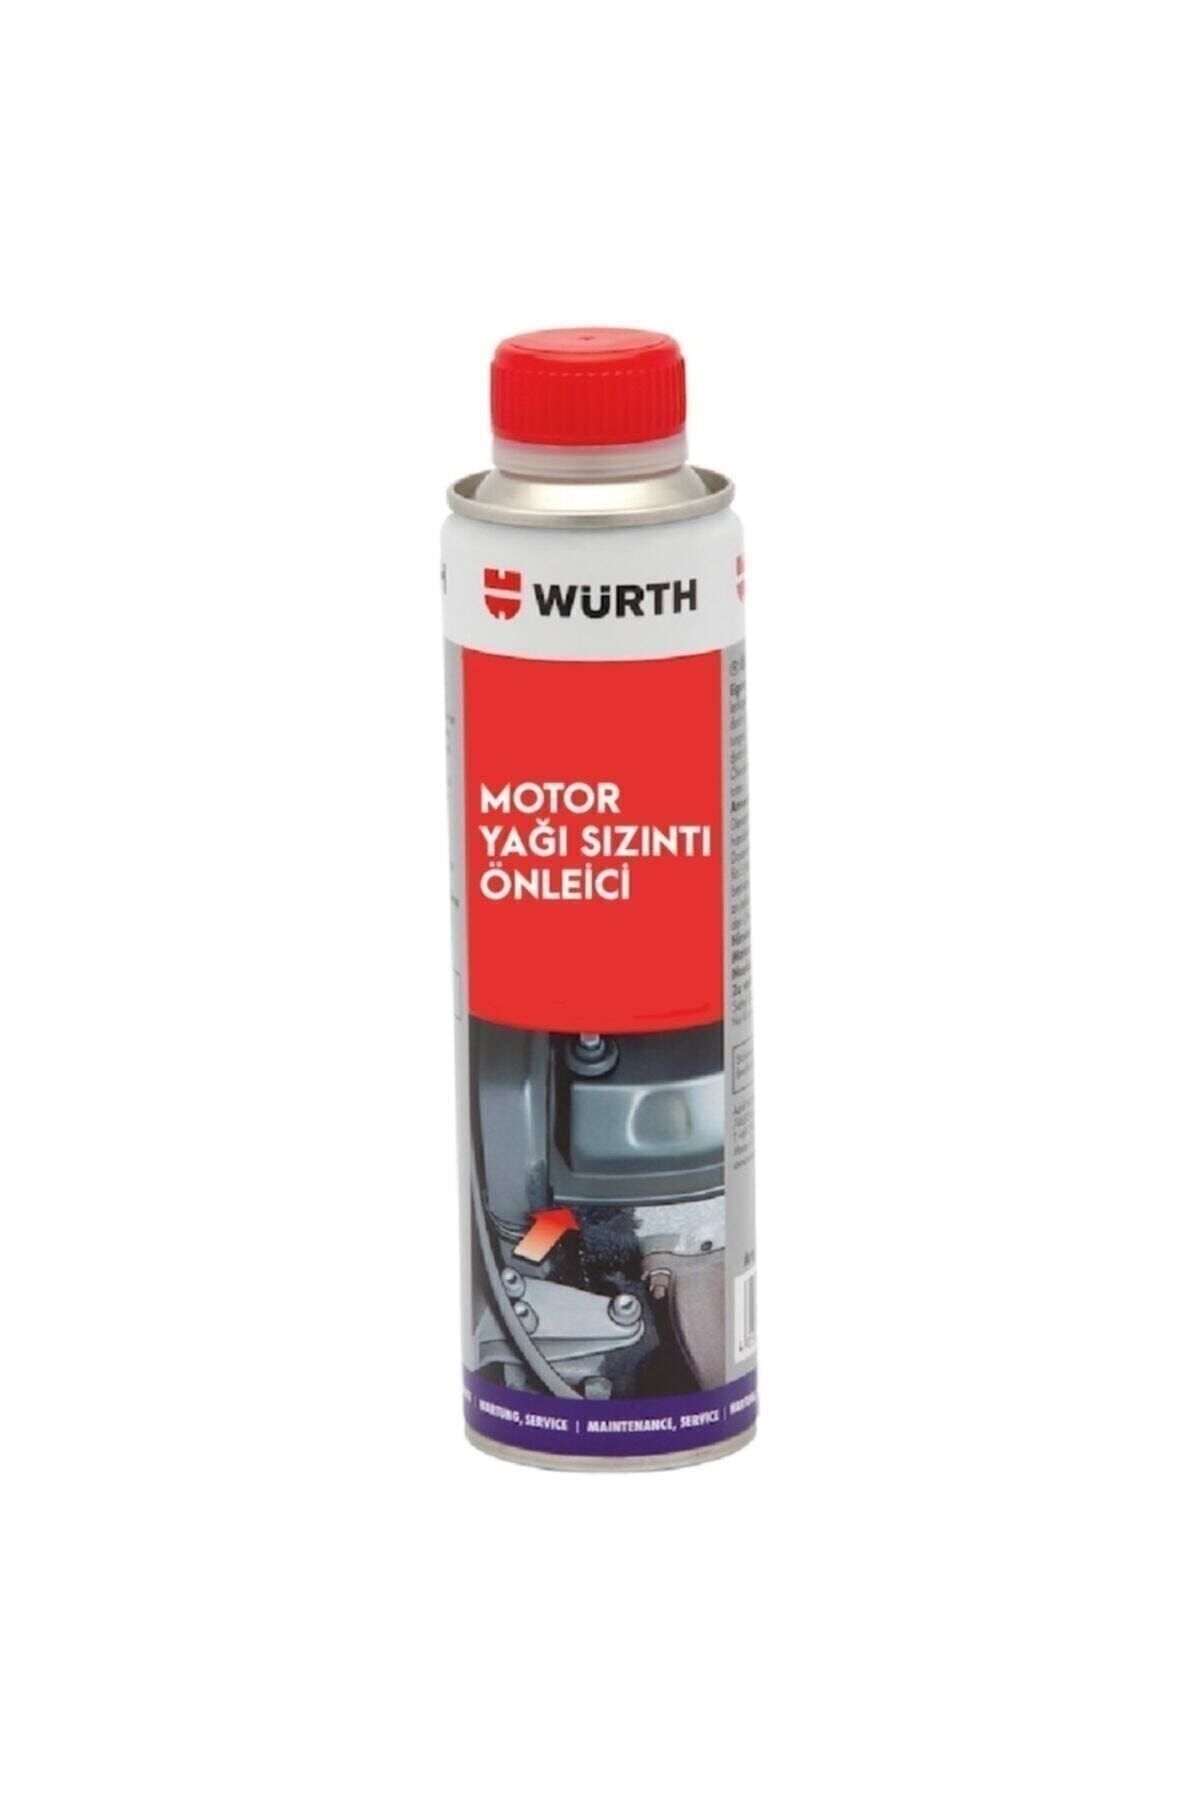 Würth 300ml Motor Yağı Sızıntı Önleyici